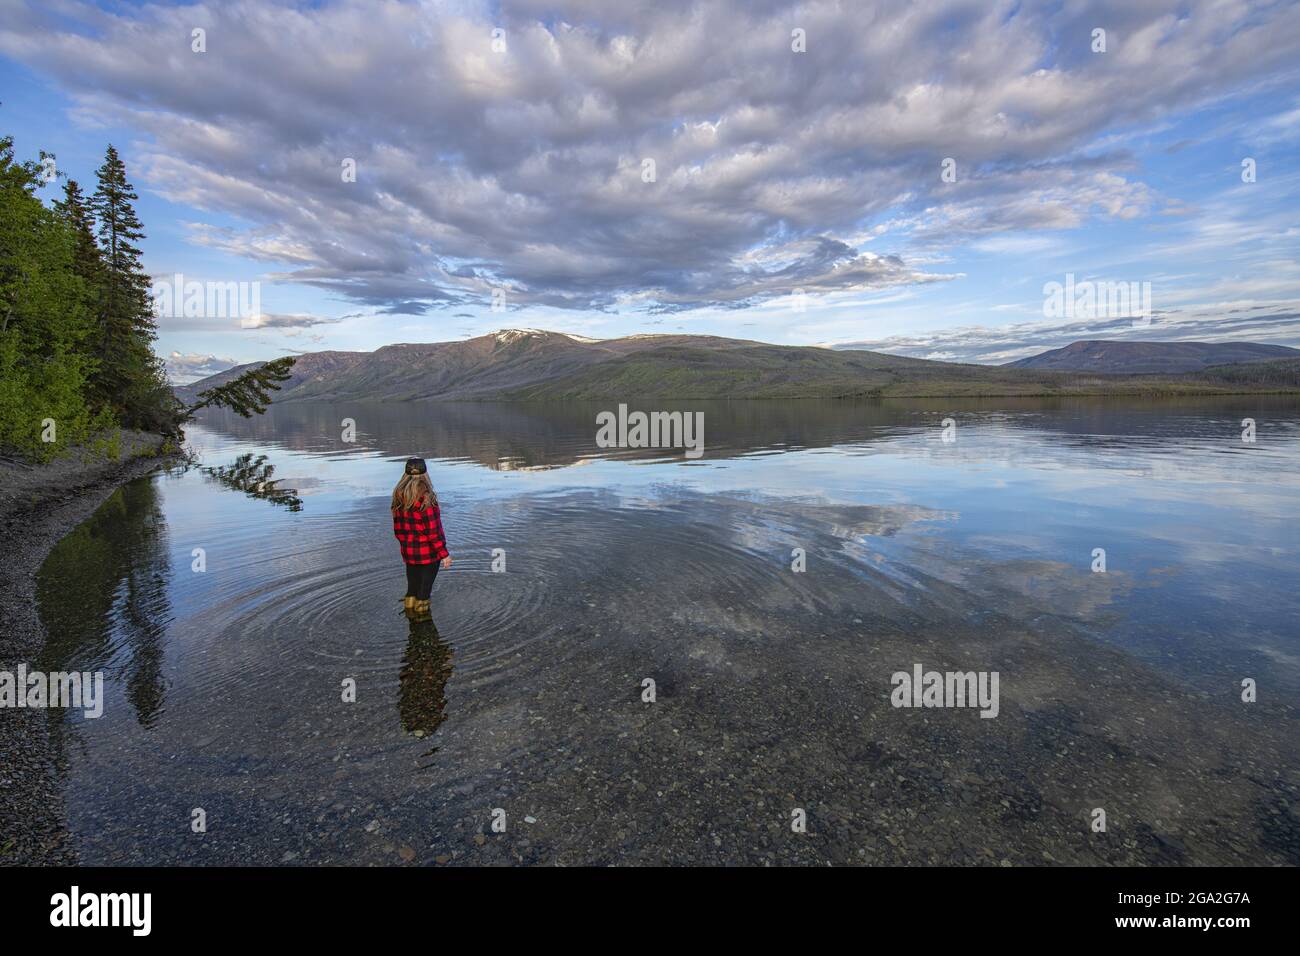 Blick von hinten aufgenommen von einer Frau, die in Little Salmon Lake in der Nähe des Ufers steht und die Aussicht am späten Nachmittag im traditionellen ... Stockfoto